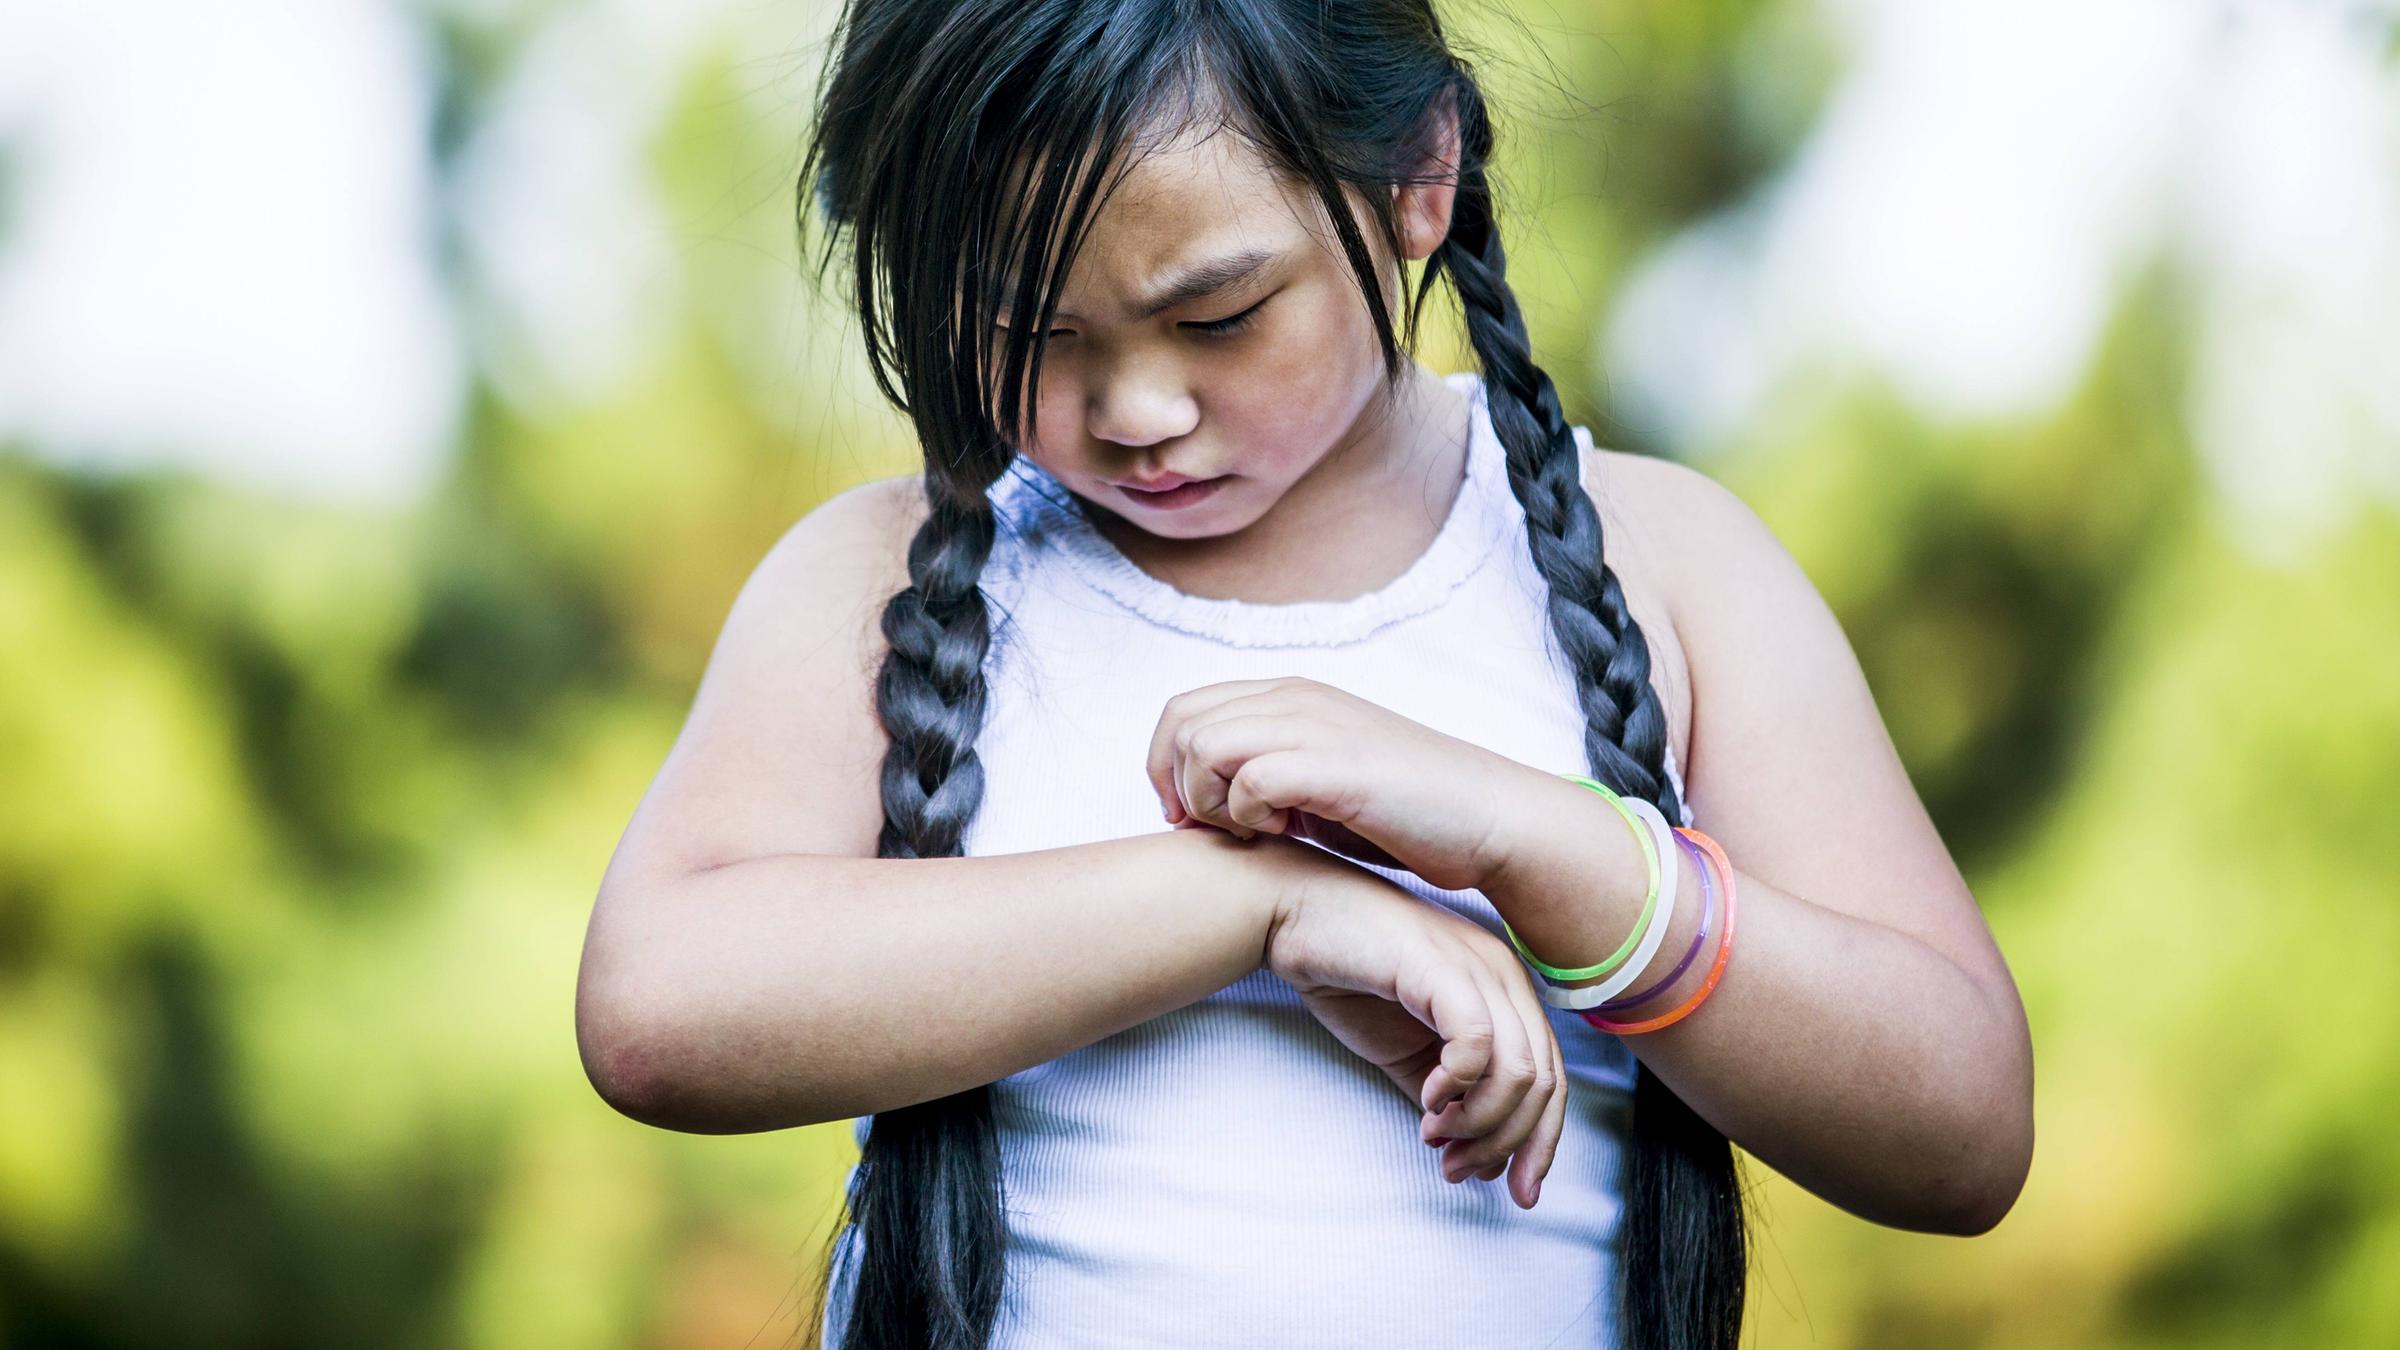 Ein Kind mit langen dunklen Zöpfen kratzt sich an der Hand.